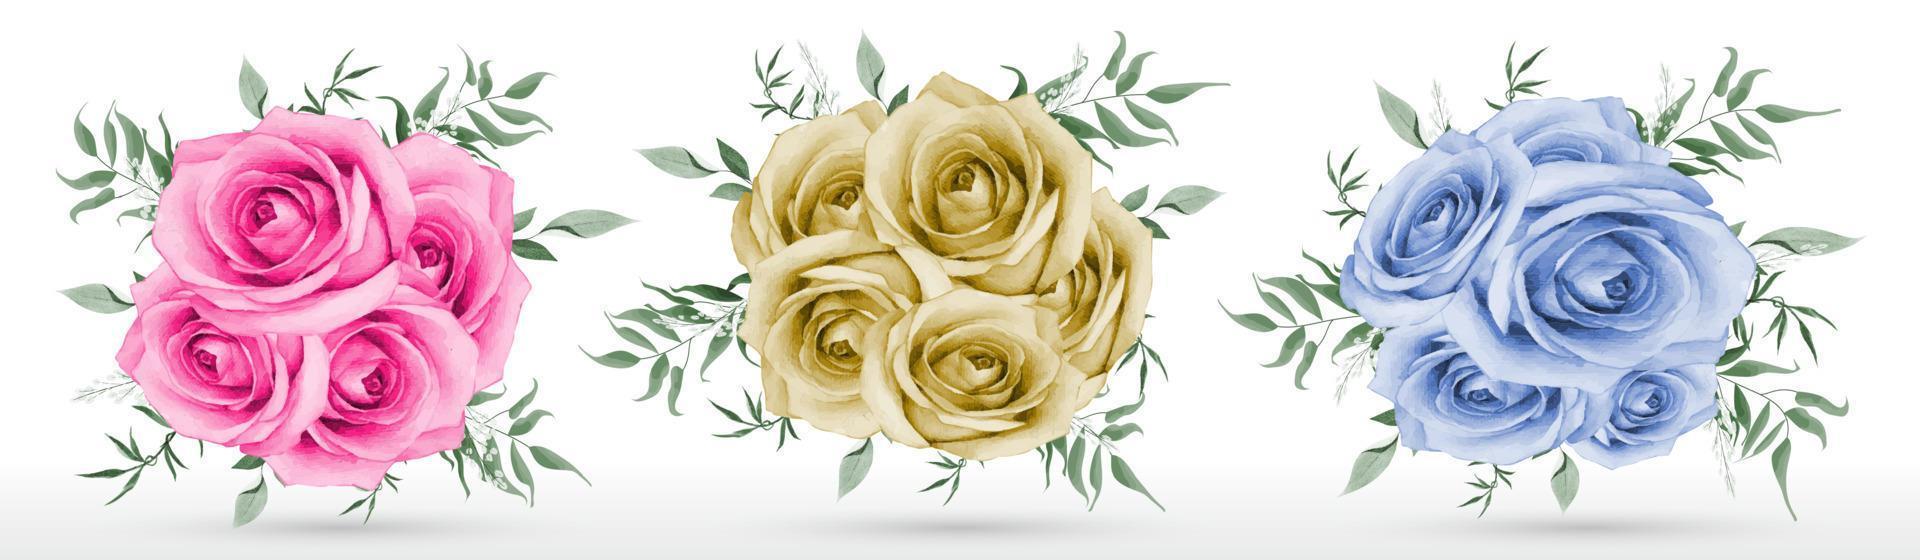 rozenboeket aquarel op witte achtergrond vector